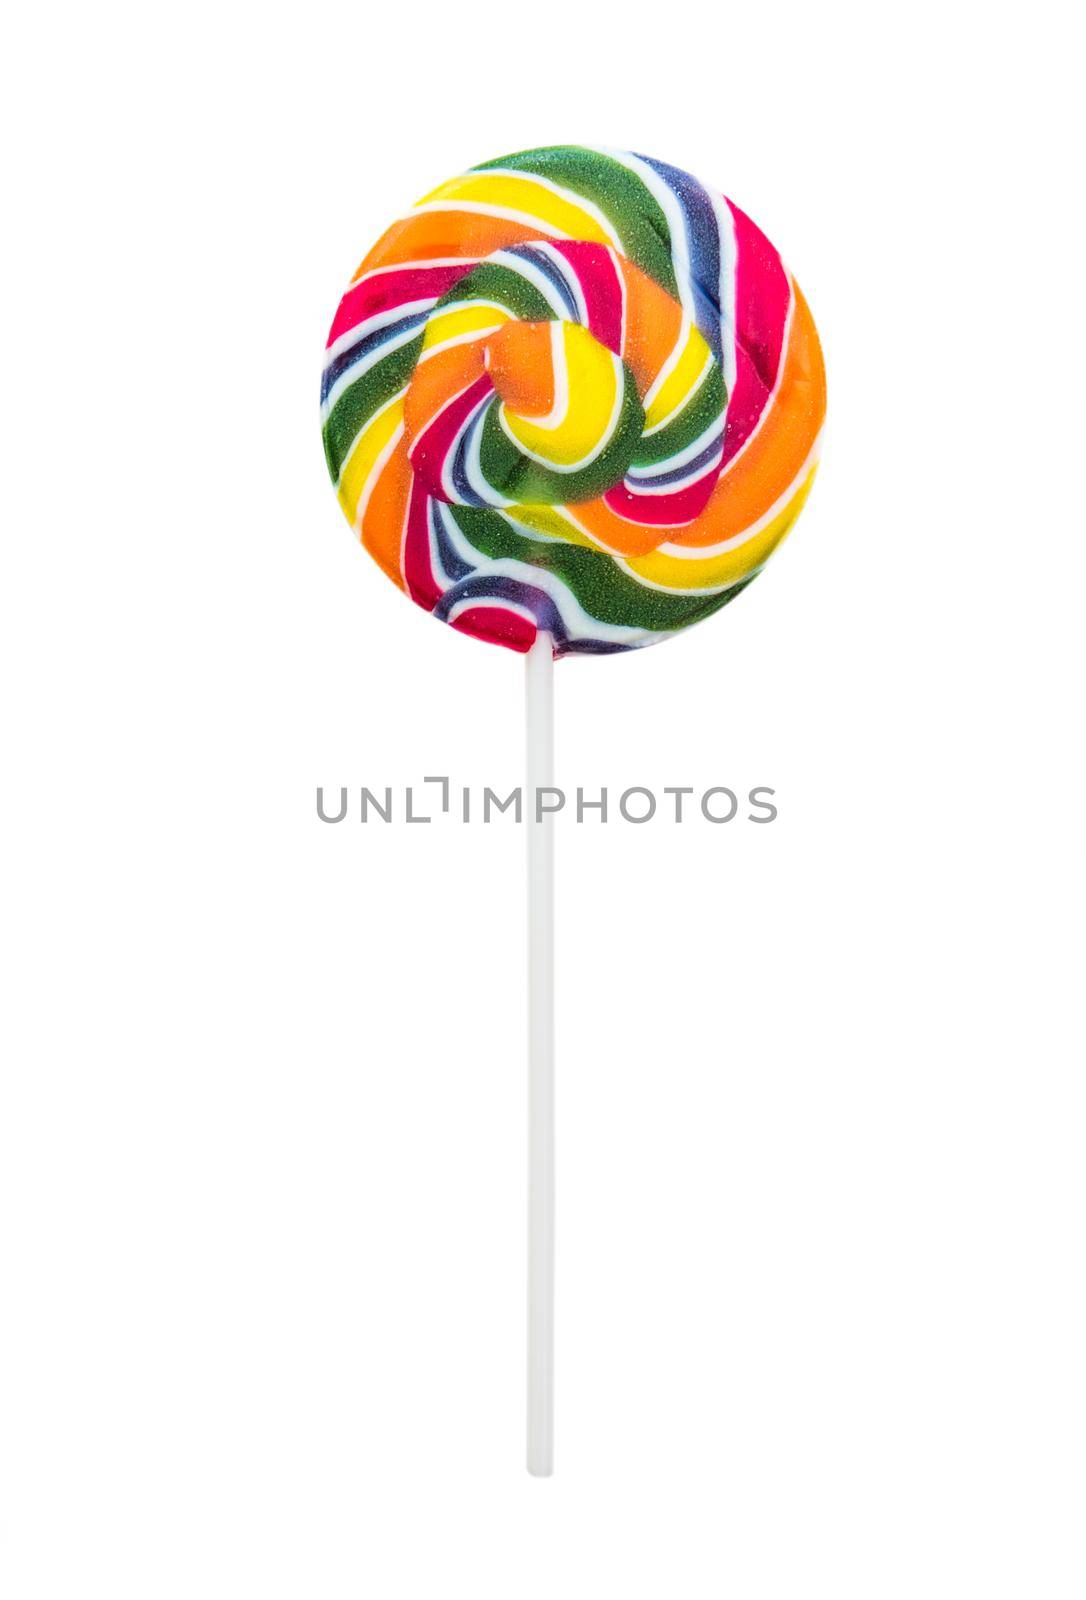 Colorful lollipop by tan4ikk1